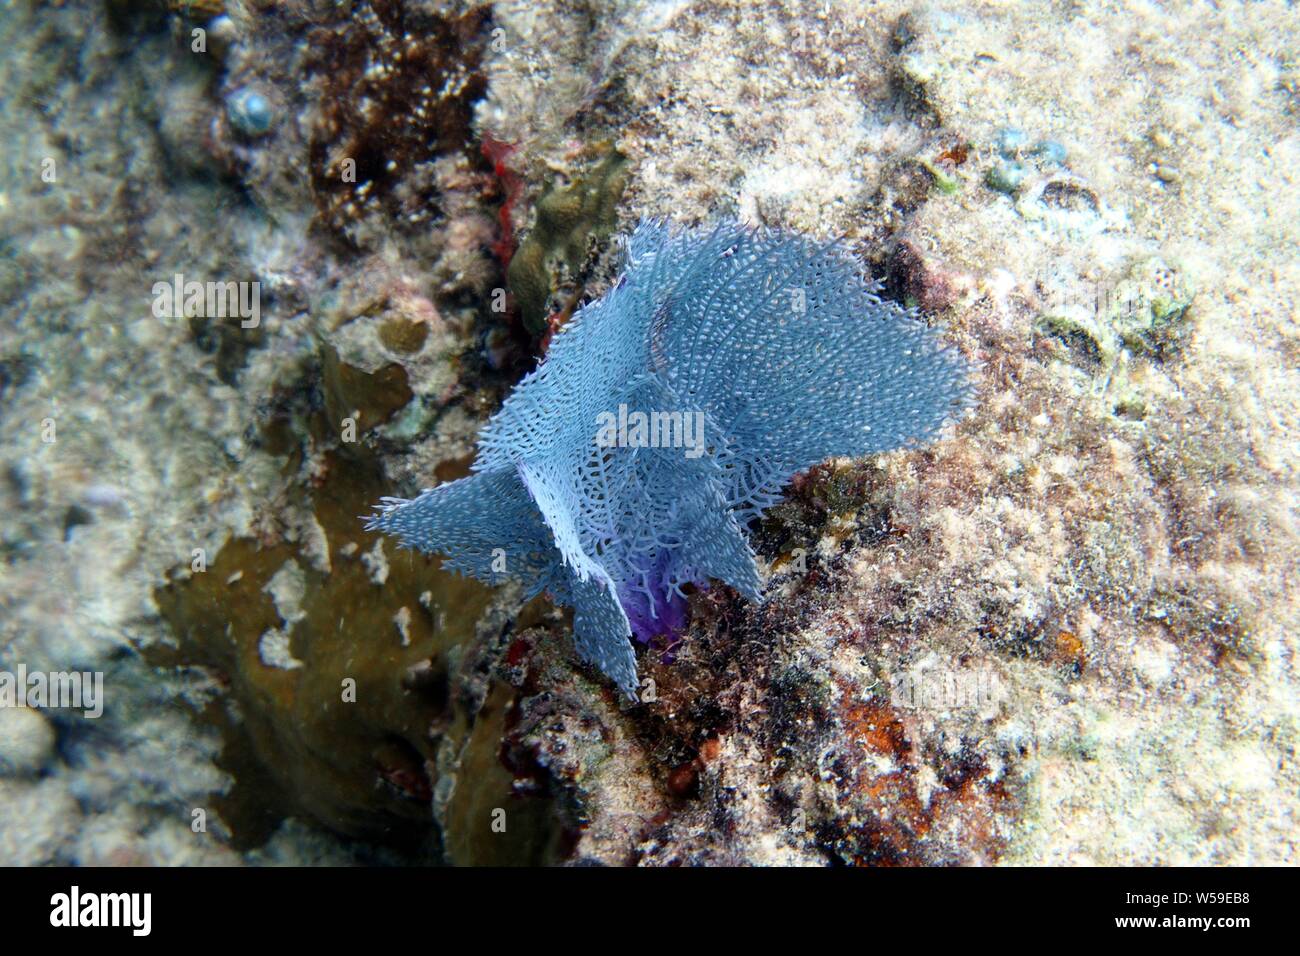 Strikingly blue coloured Common sea fan (Gorgonia flabellum), Little Bay, Anguilla, BWI. Stock Photo